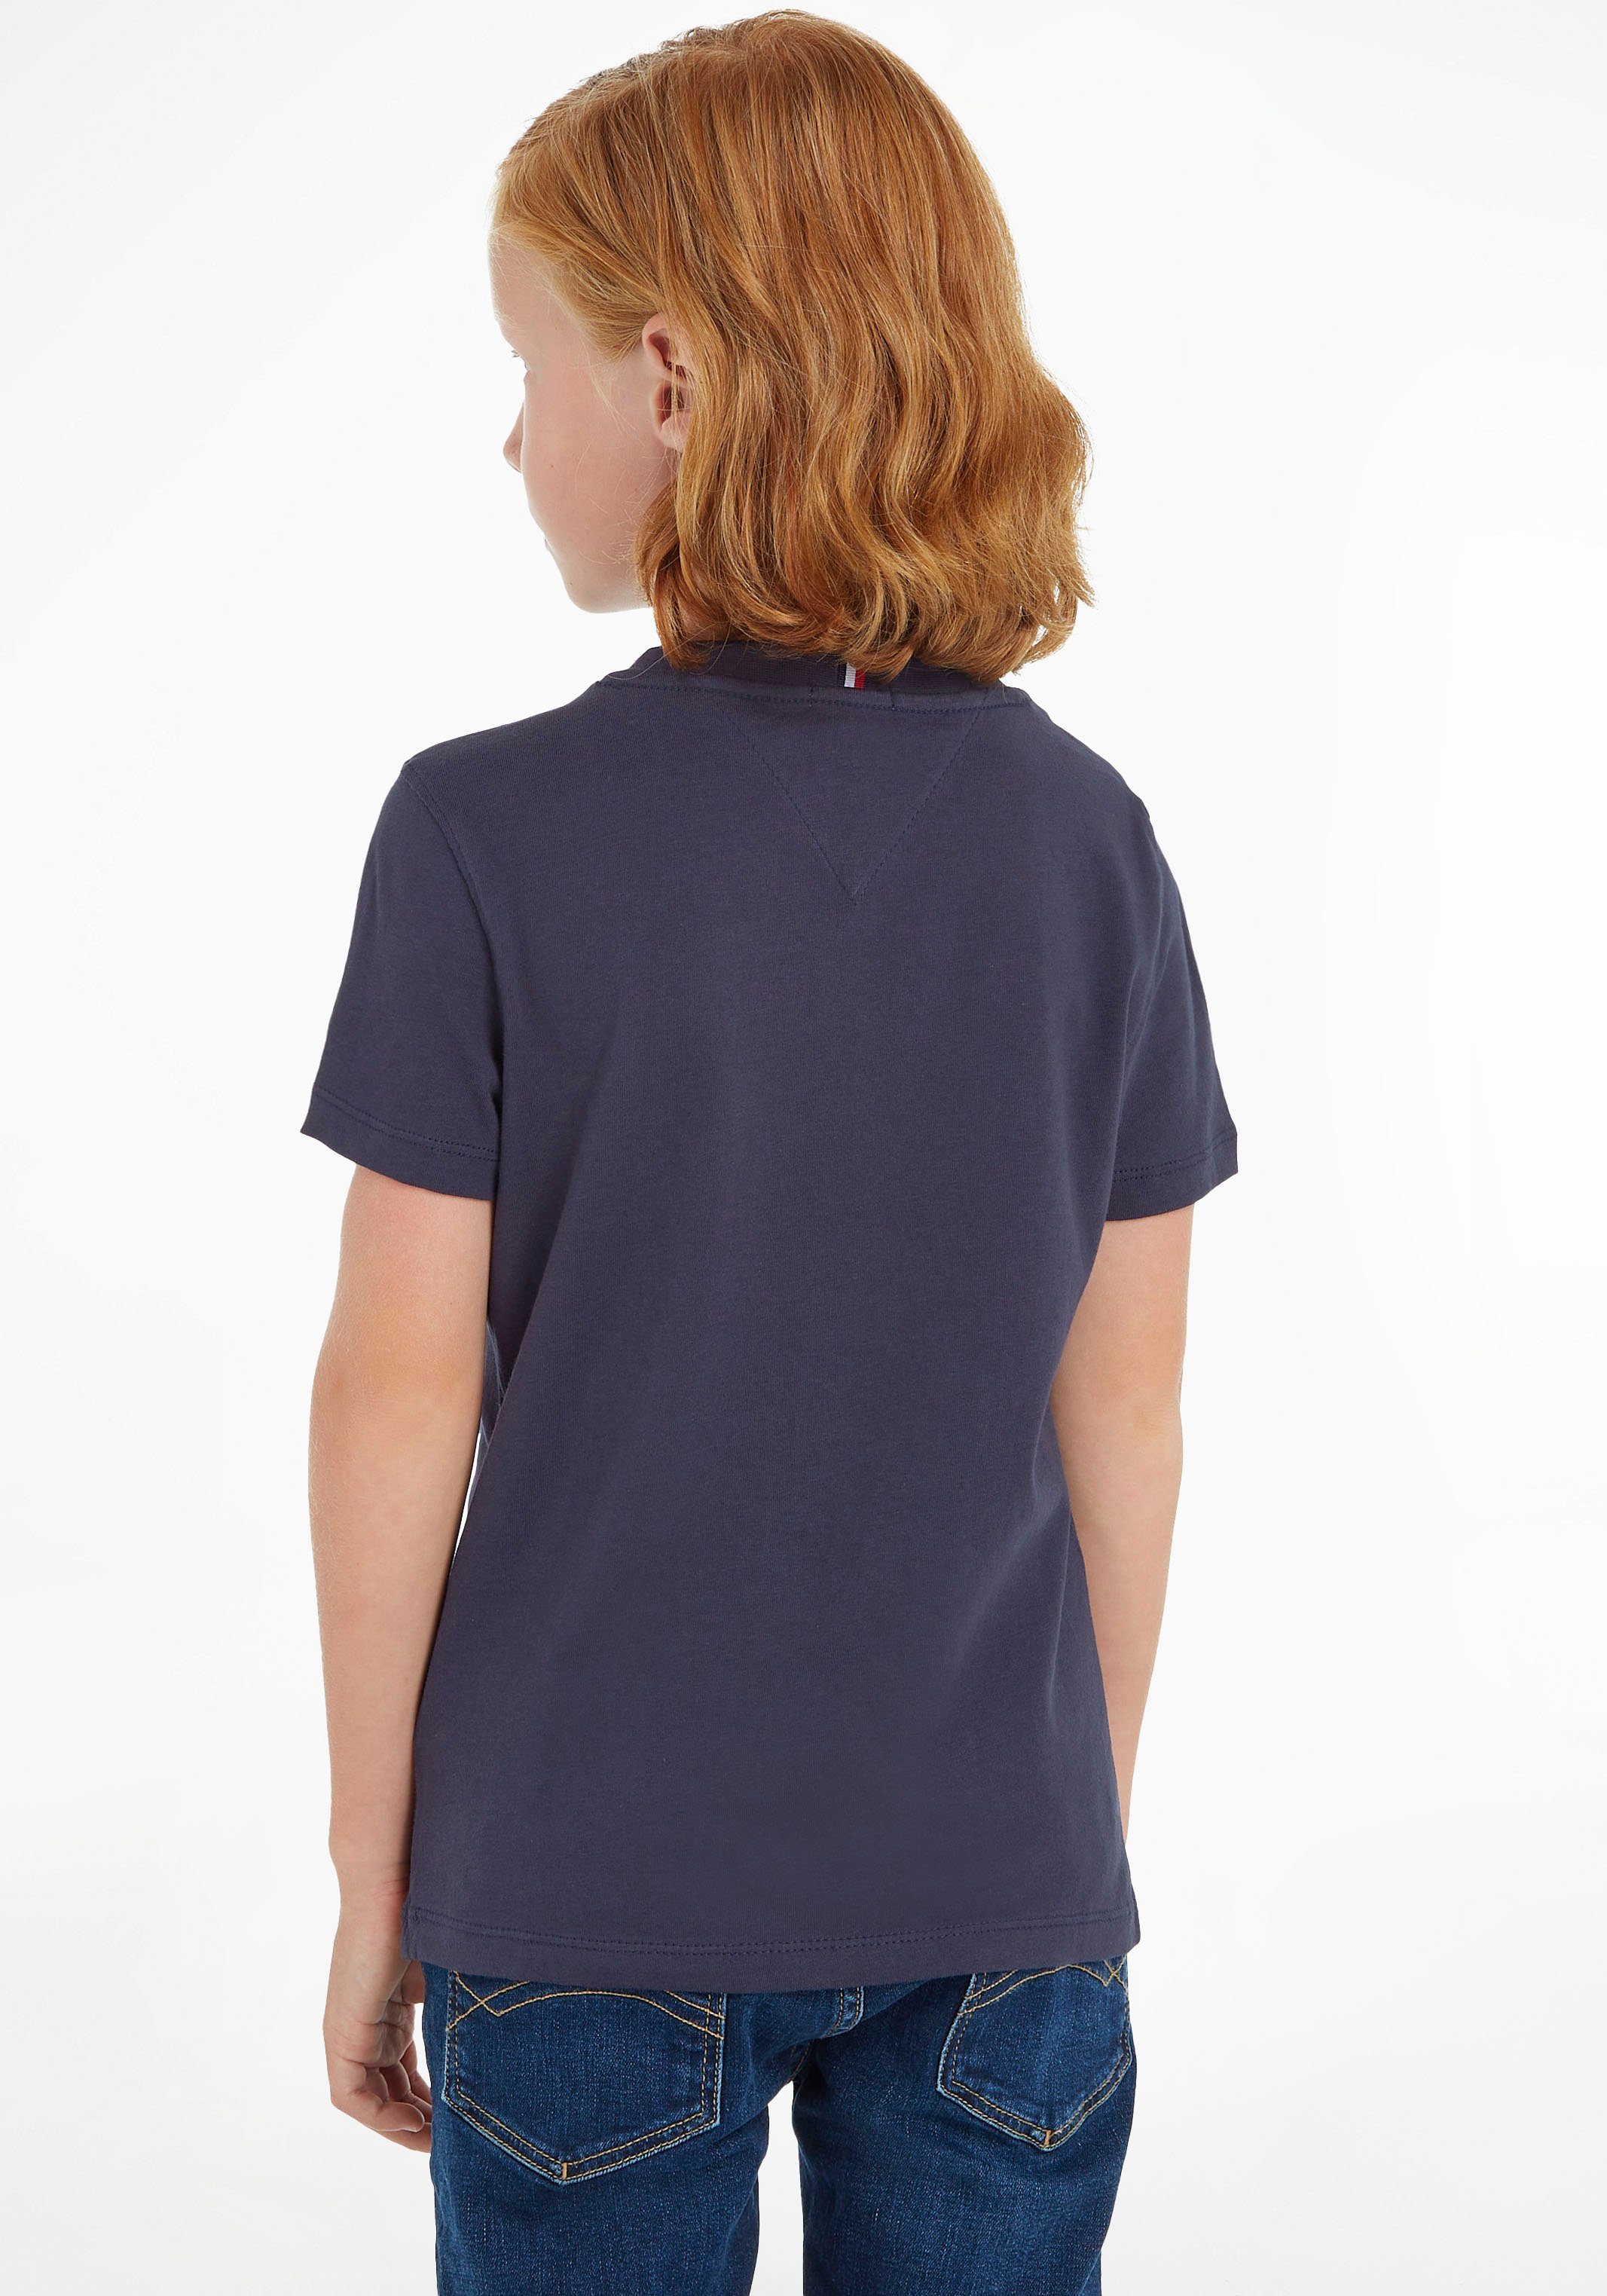 Jungen T-Shirt Hilfiger Kinder Kids ESSENTIAL Junior TEE MiniMe,für Mädchen Tommy und